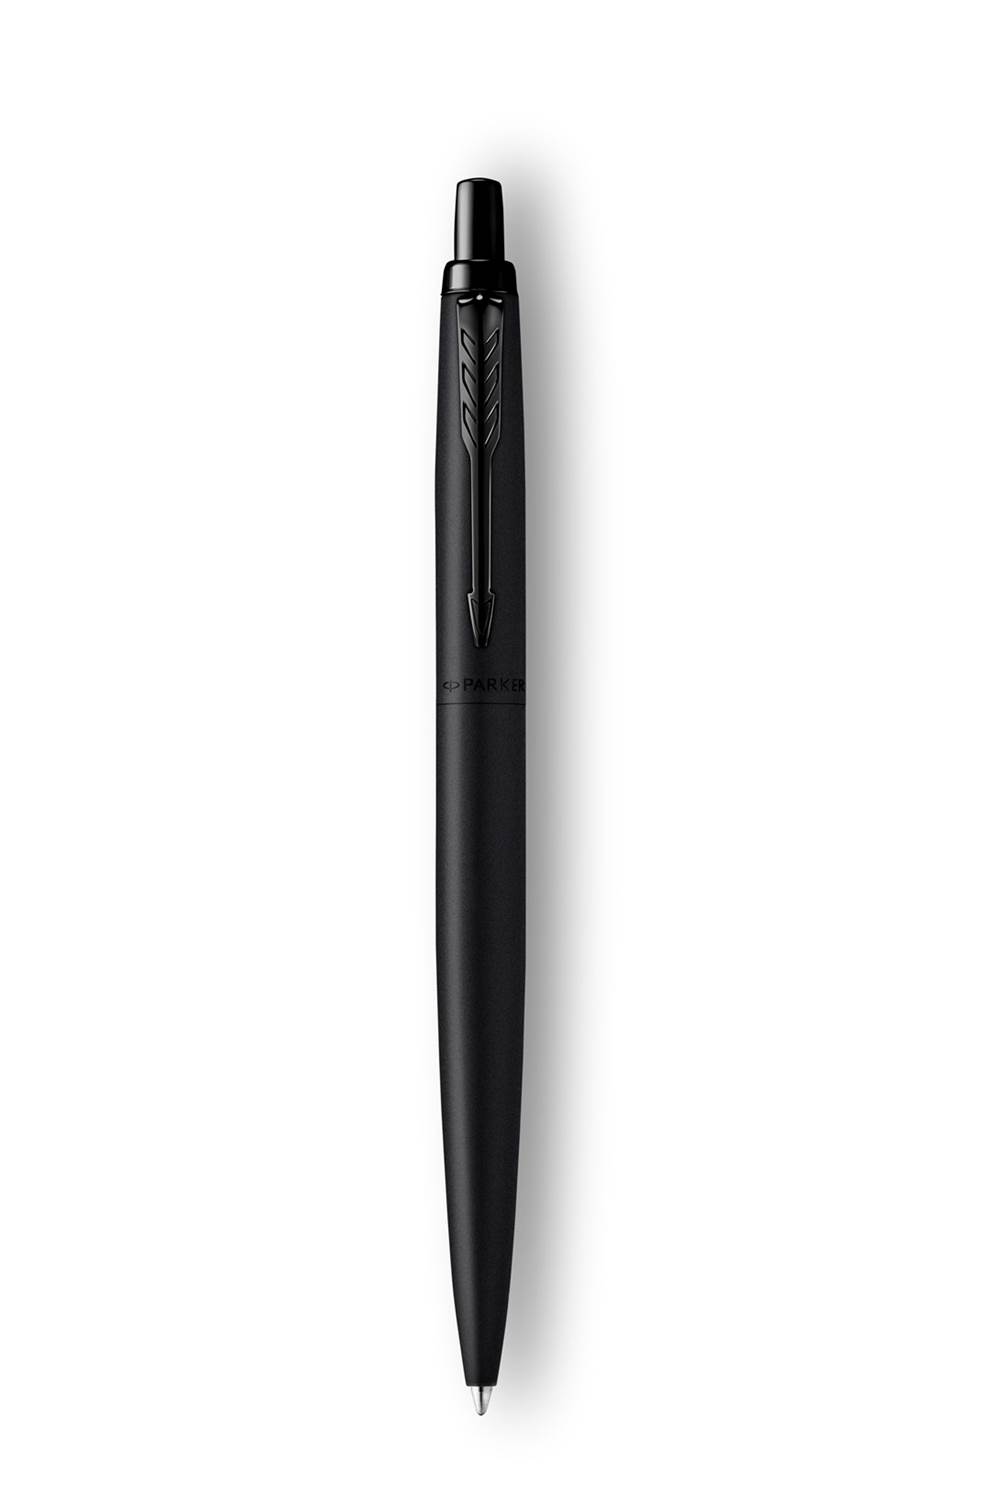 Parker Jotter XL długopis Black Monochrome, kolor czarny matowy, końcówka medium, niebieski tusz, opakowanie prezentowe